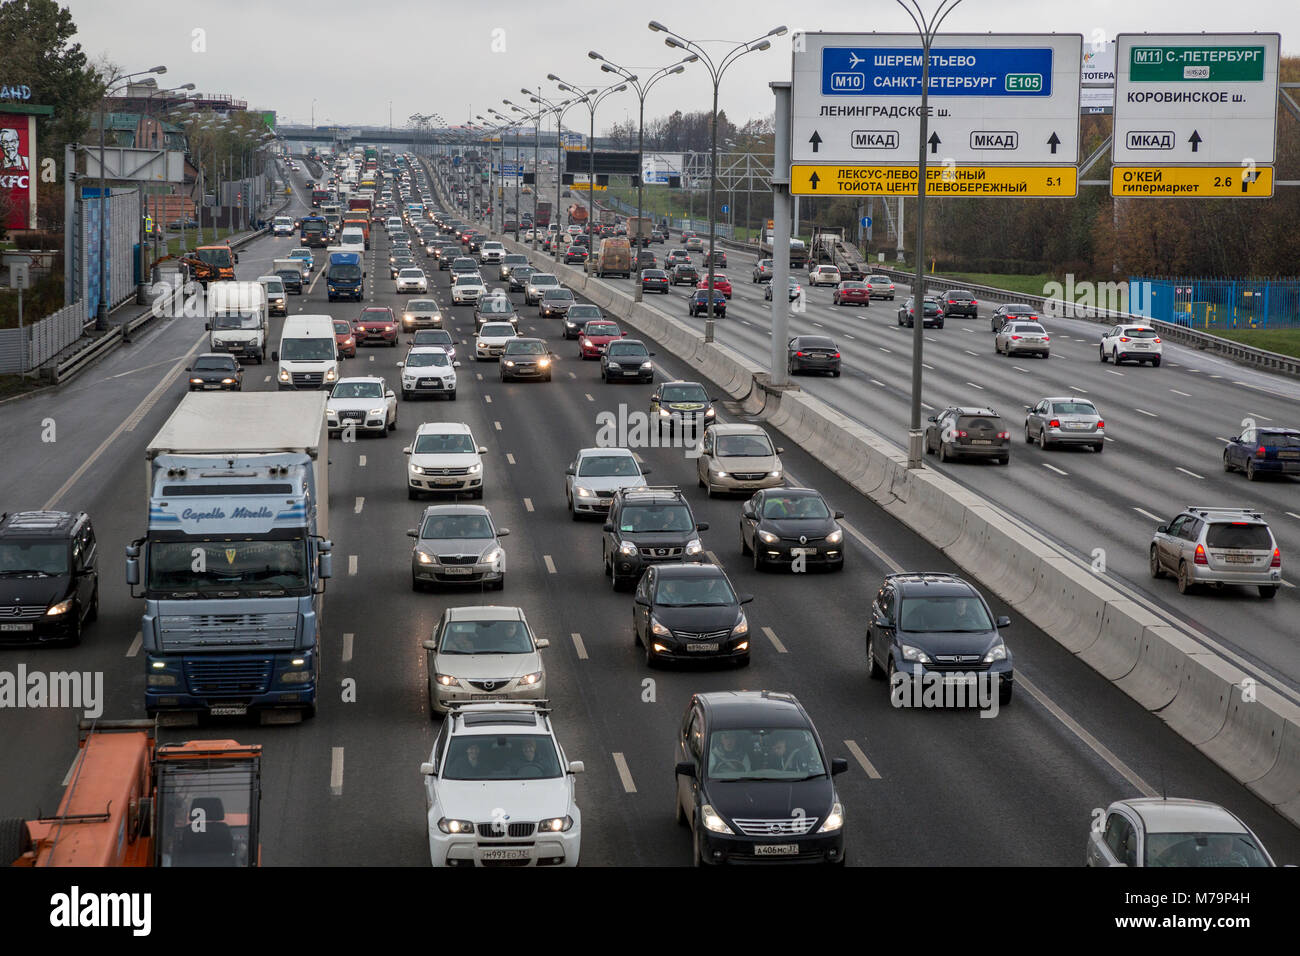 Luftbild an einer Straße mit vielen Autos im Stau auf Nördlich der Moskauer Ringautobahn (MKAD), Russland stehen. Stockfoto